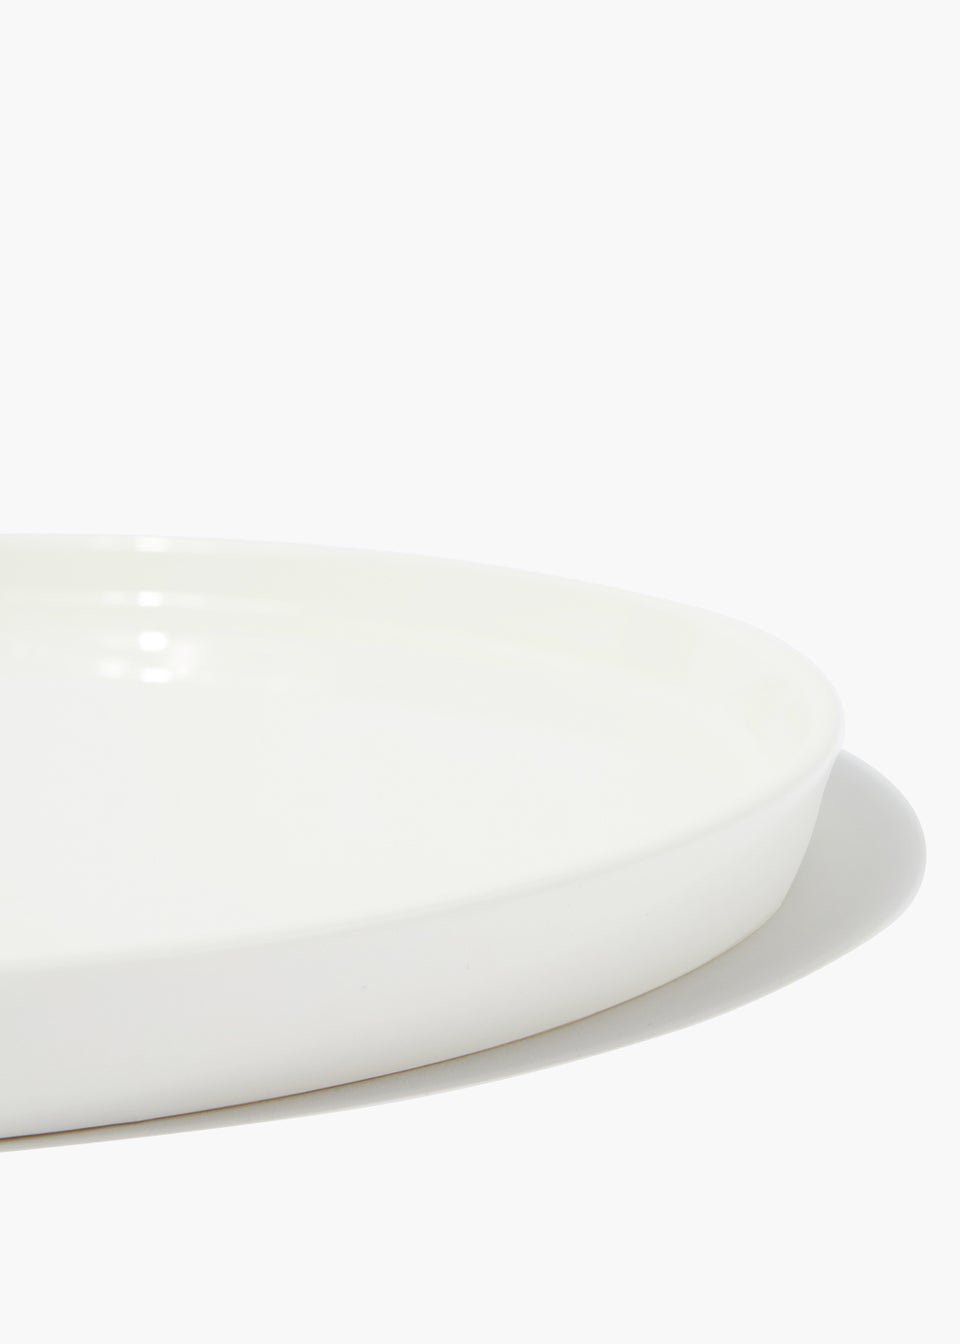 White Lipped Dinner Plate (26cm x 26cm)